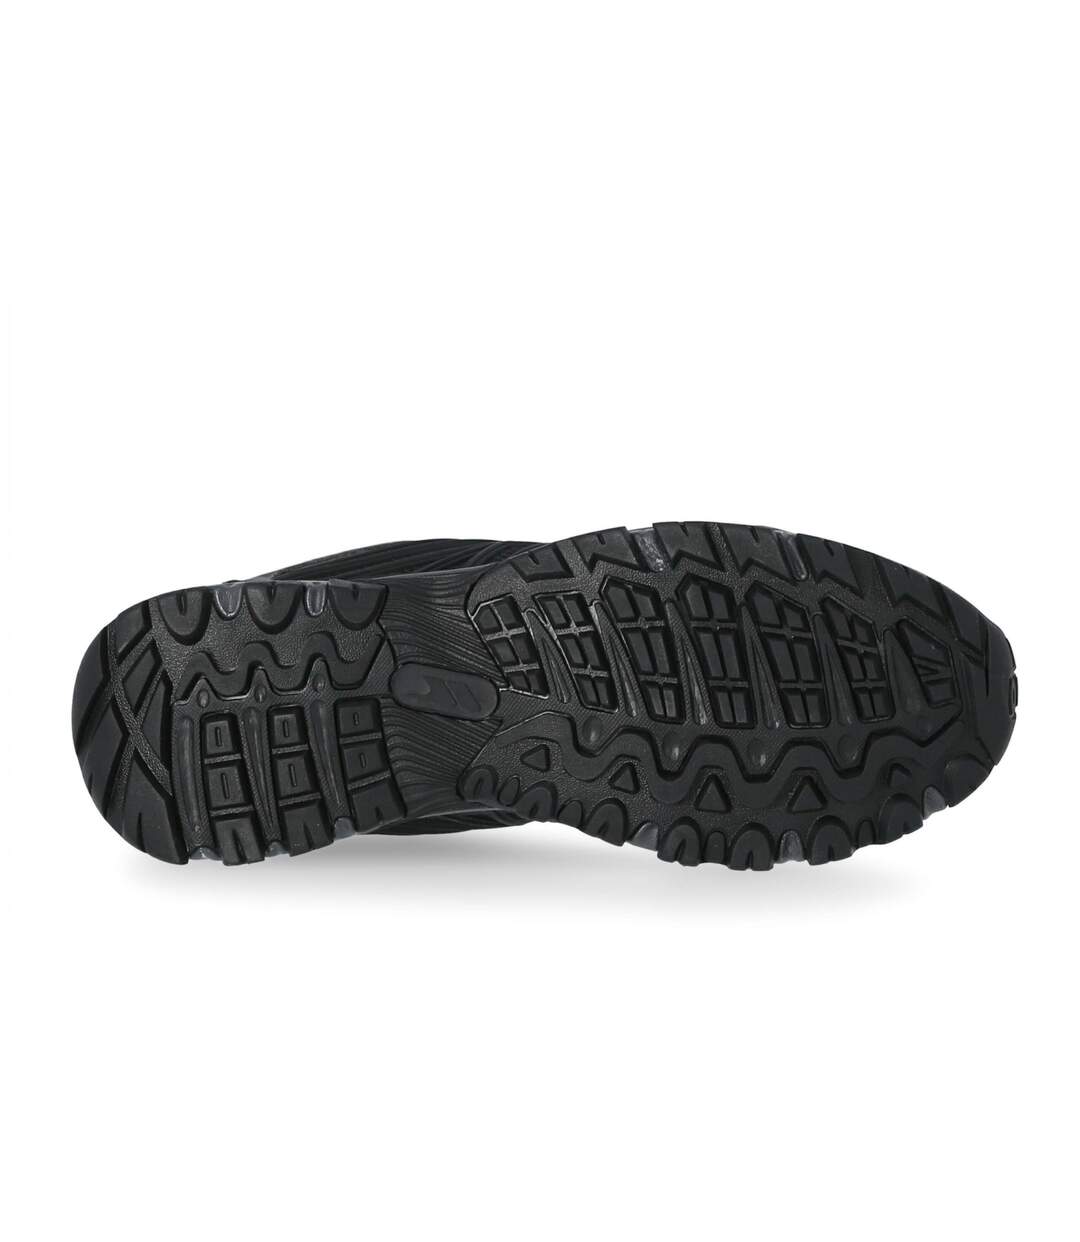 Trespass - Chaussures de randonnée FISK - Homme (Noir) - UTTP4244